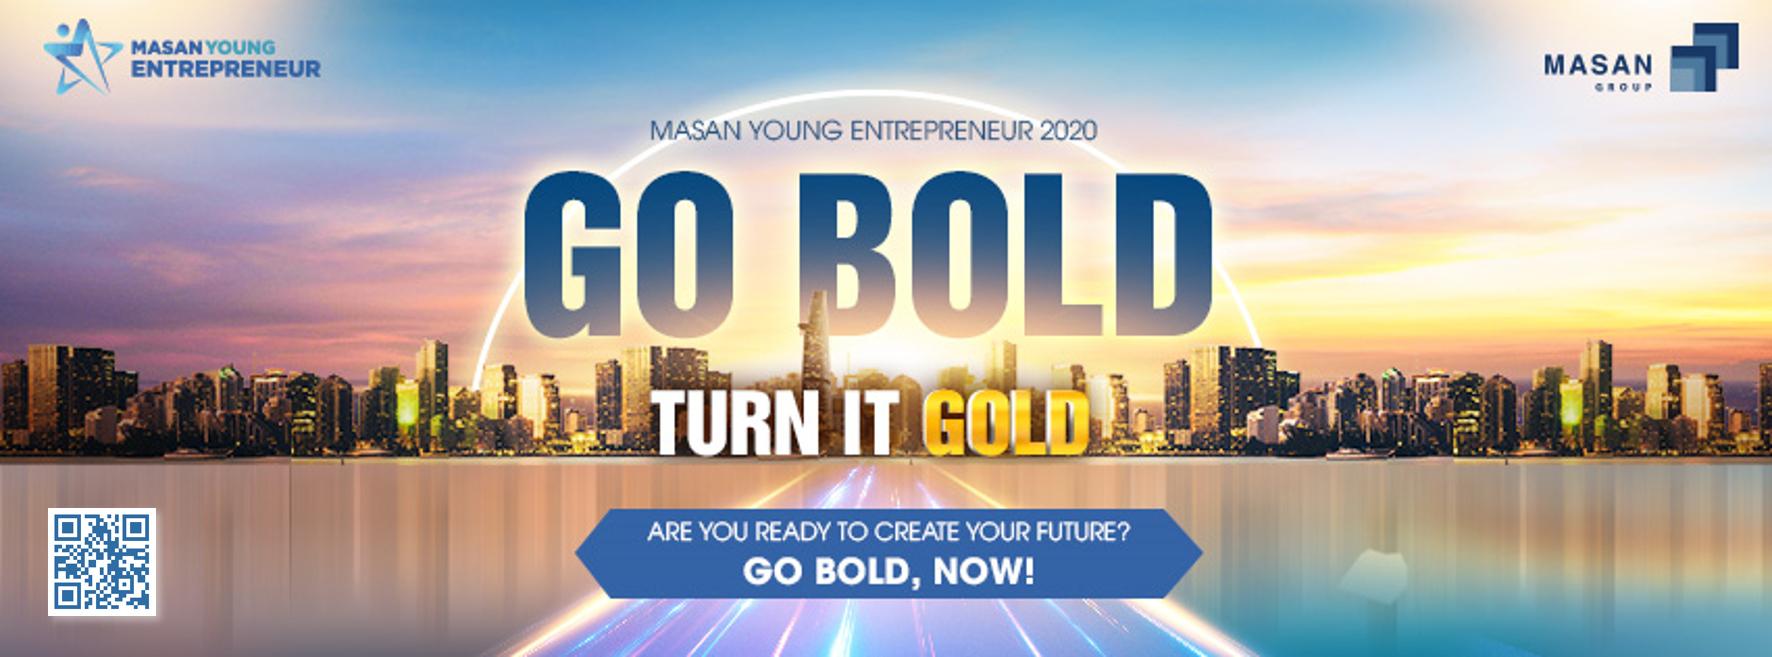 Chương trình Masan Young Entrepreneur 2020 (MYE 2020) đã bắt đầu - Xã hội học - Công tác xã pic